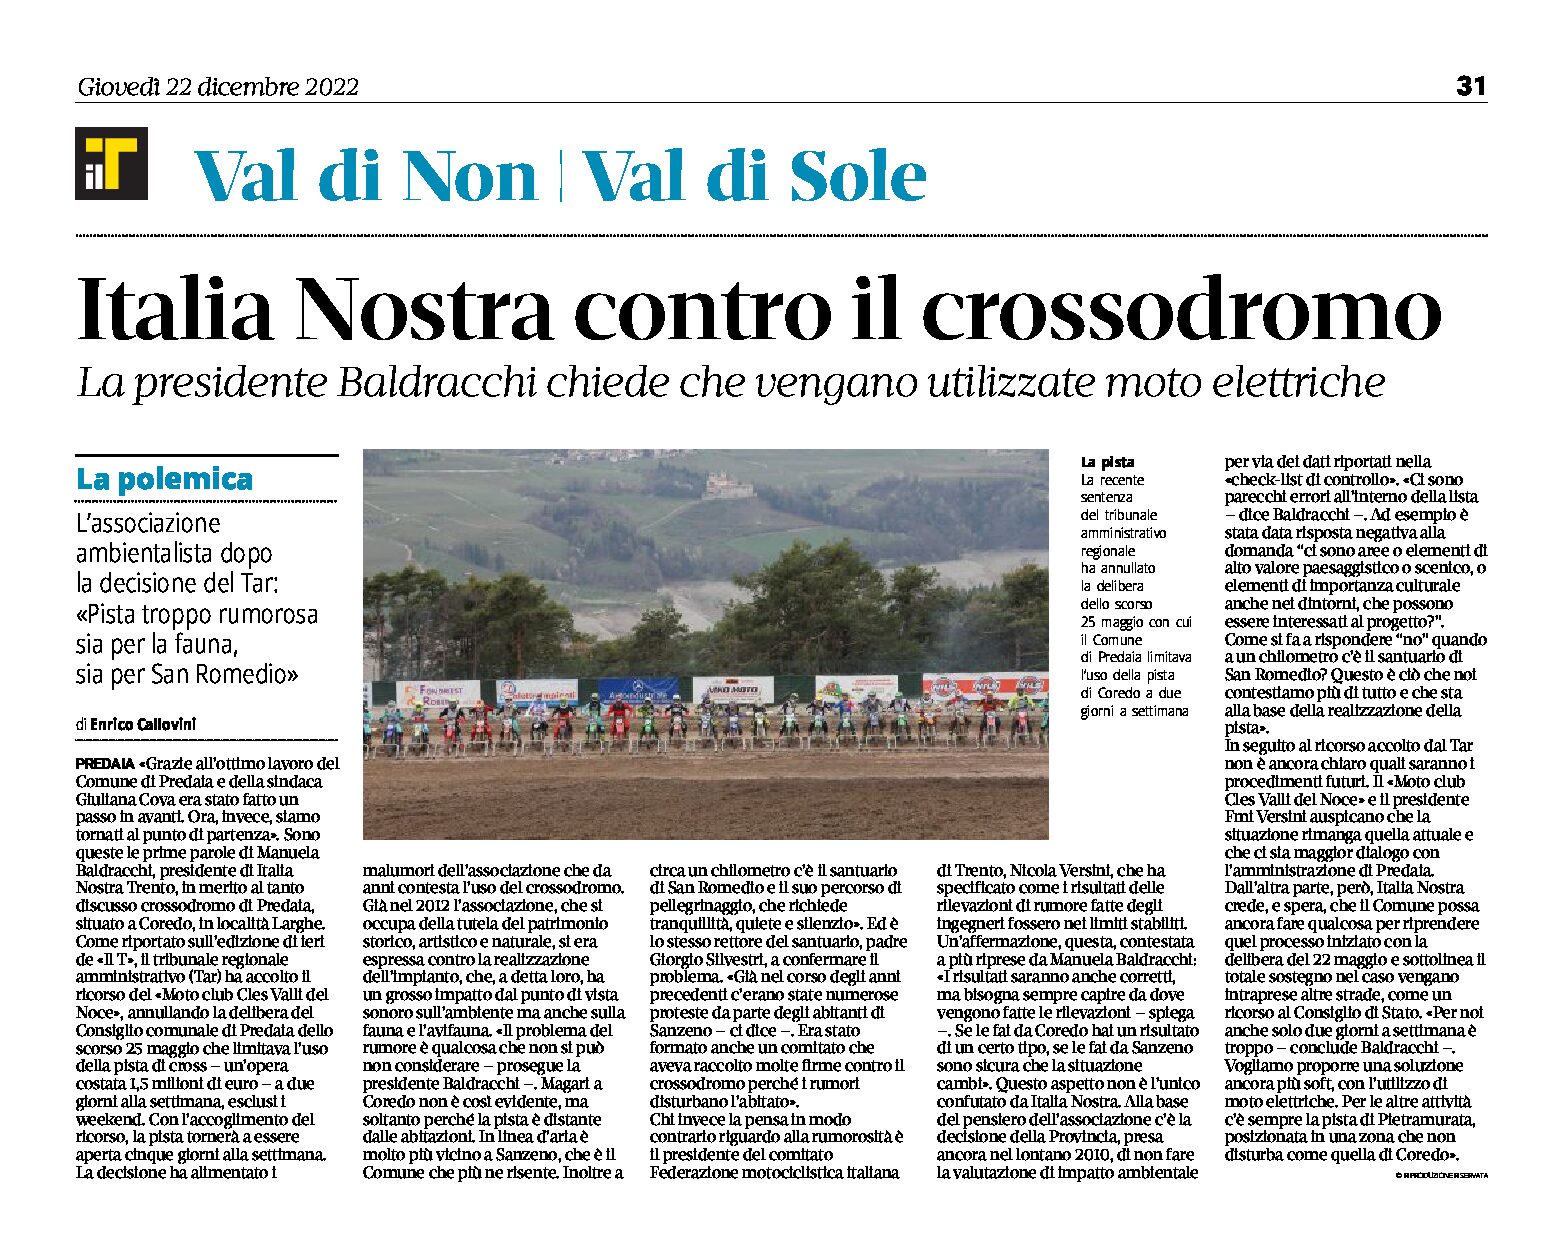 Predaia: Italia Nostra contro il crossodromo. Baldracchi chiede che vengano utilizzate moto elettriche